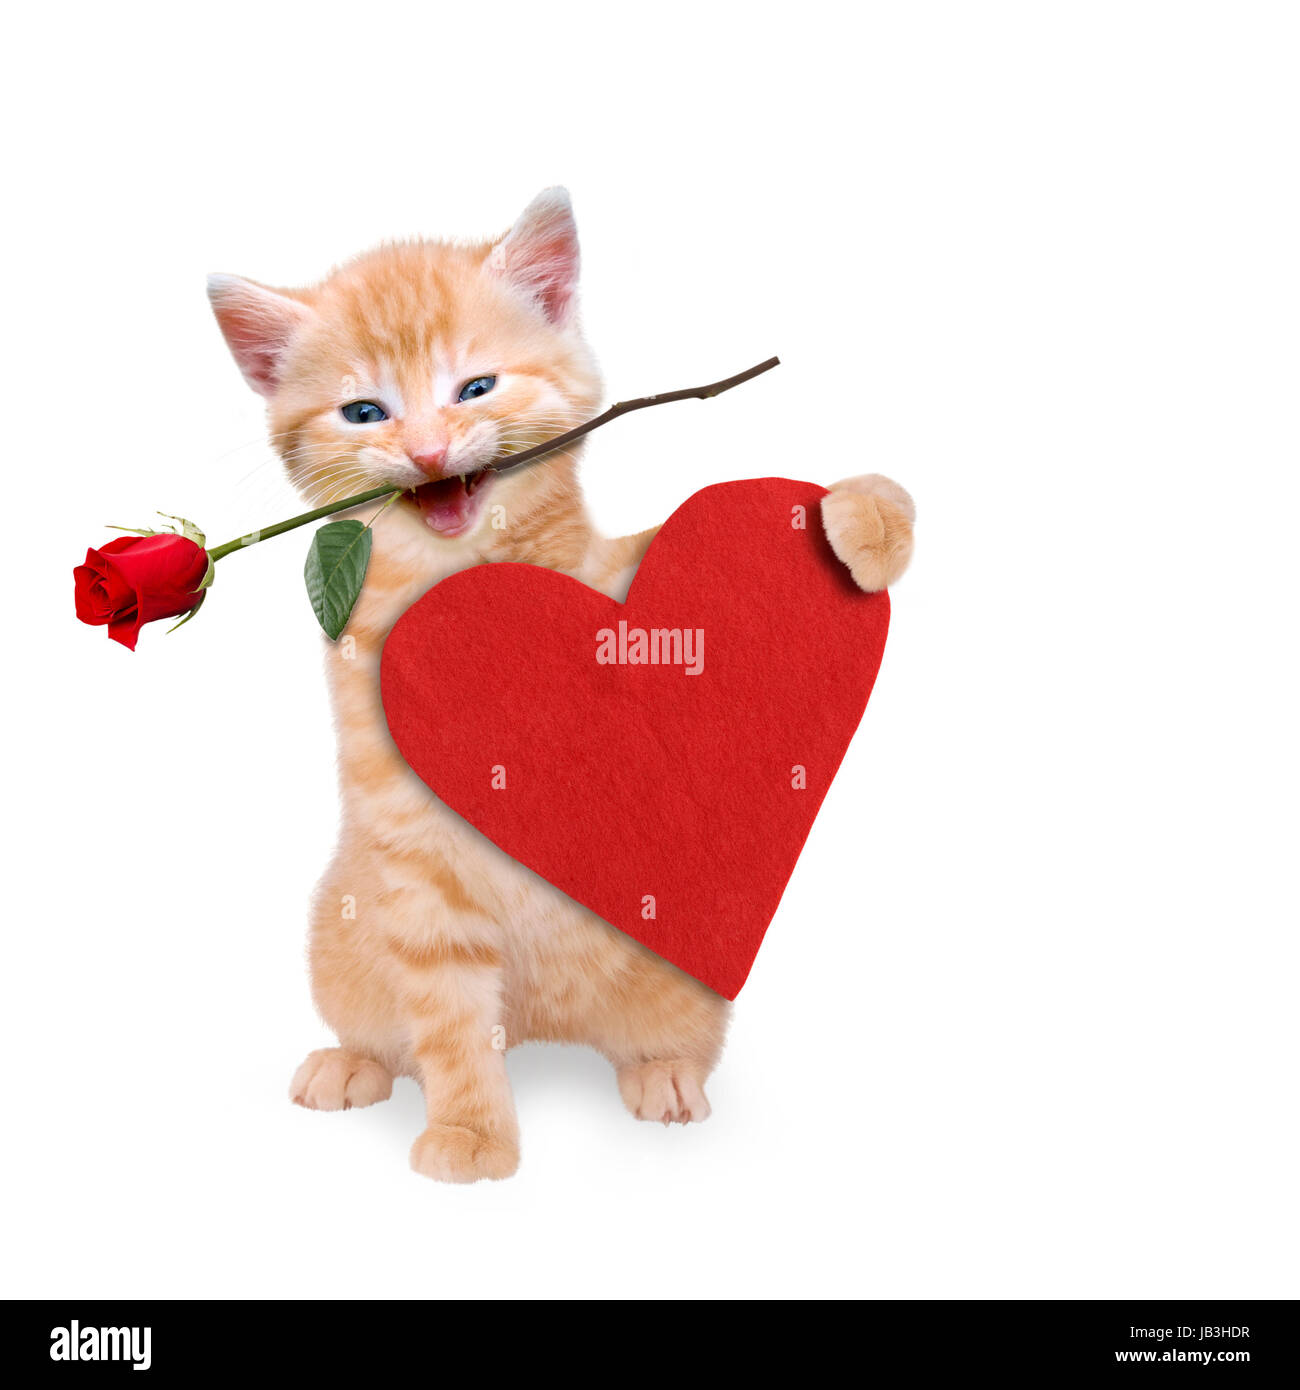 Katze mit roter Rose und rotem Herz Stock Photo